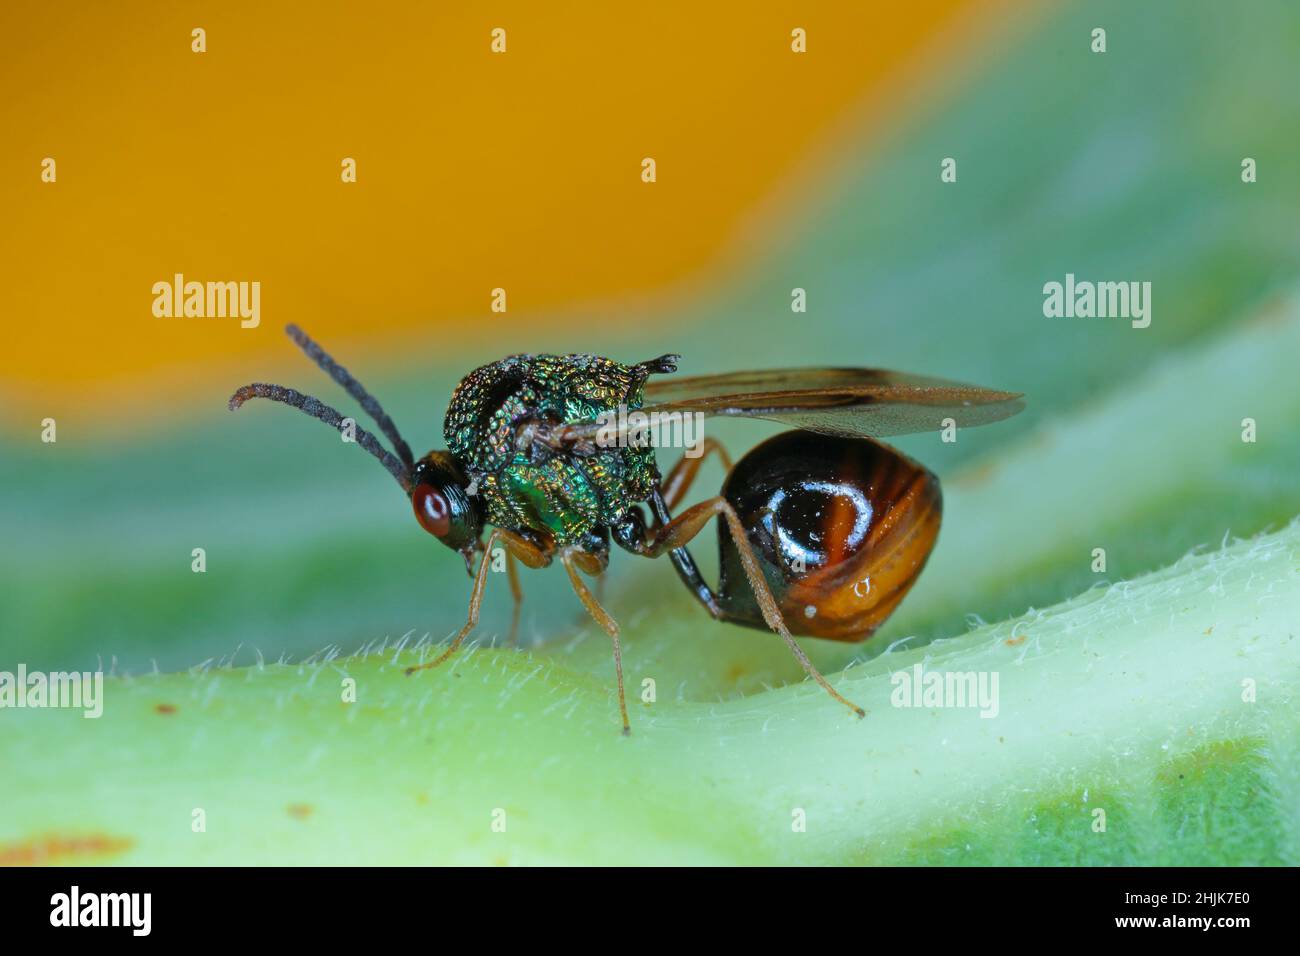 Parasitäre Hymenoptera der Familie Eucharitidae - Stilbula cyniformis. Die Larven dieser Wespe parasitieren Ameisen. Stockfoto